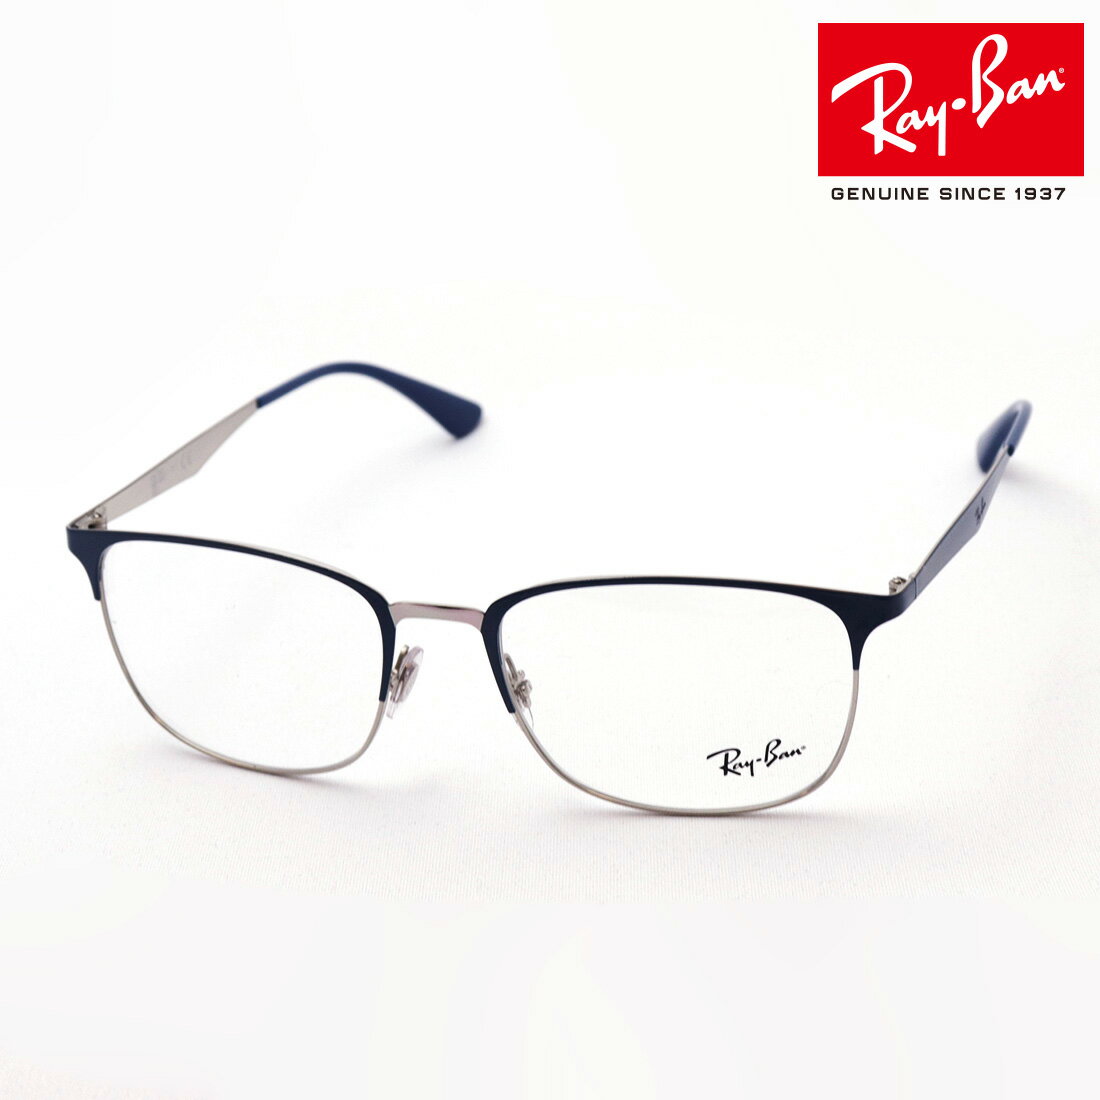 レイバン メガネ メンズ プレミア生産終了モデル 正規レイバン日本最大級の品揃え レイバン メガネ フレーム Ray-Ban RX6421 3101 伊達メガネ 度付き ブルーライト カット 眼鏡 RayBan スクエア ブルー系 シルバー系